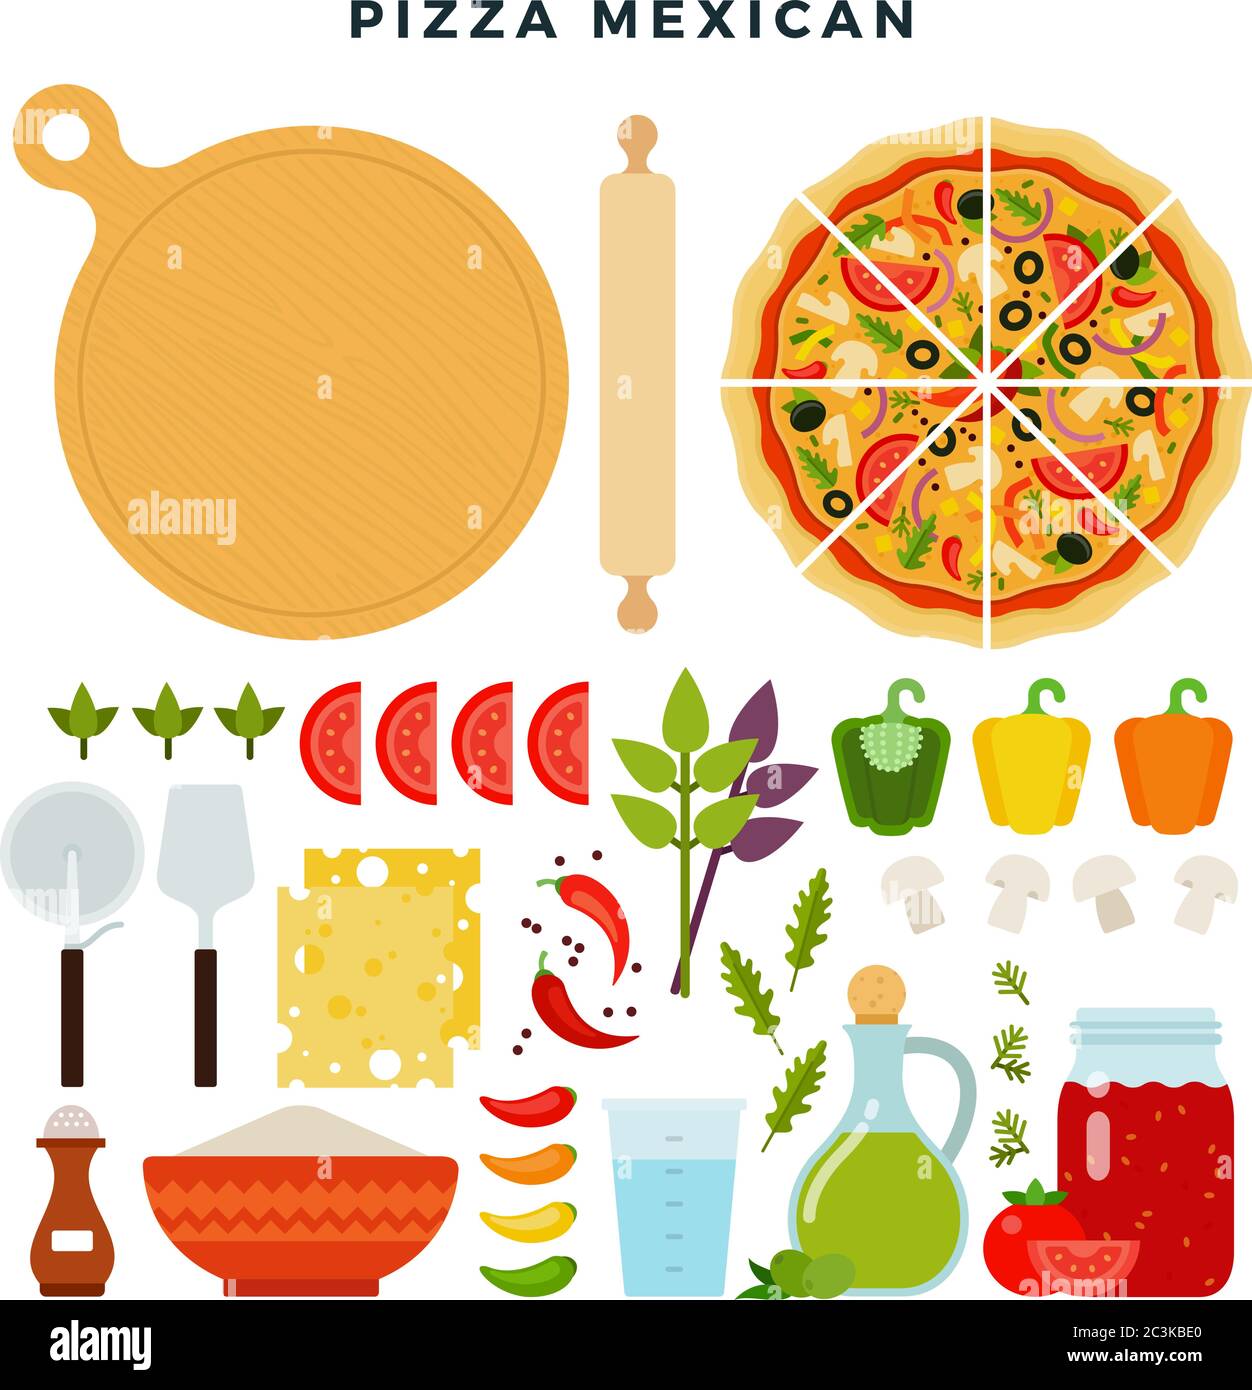 Pizza messicana e tutti gli ingredienti per cucinare. Fai la tua pizza. Set di prodotti e strumenti per la pizza. Illustrazione vettoriale. Illustrazione Vettoriale